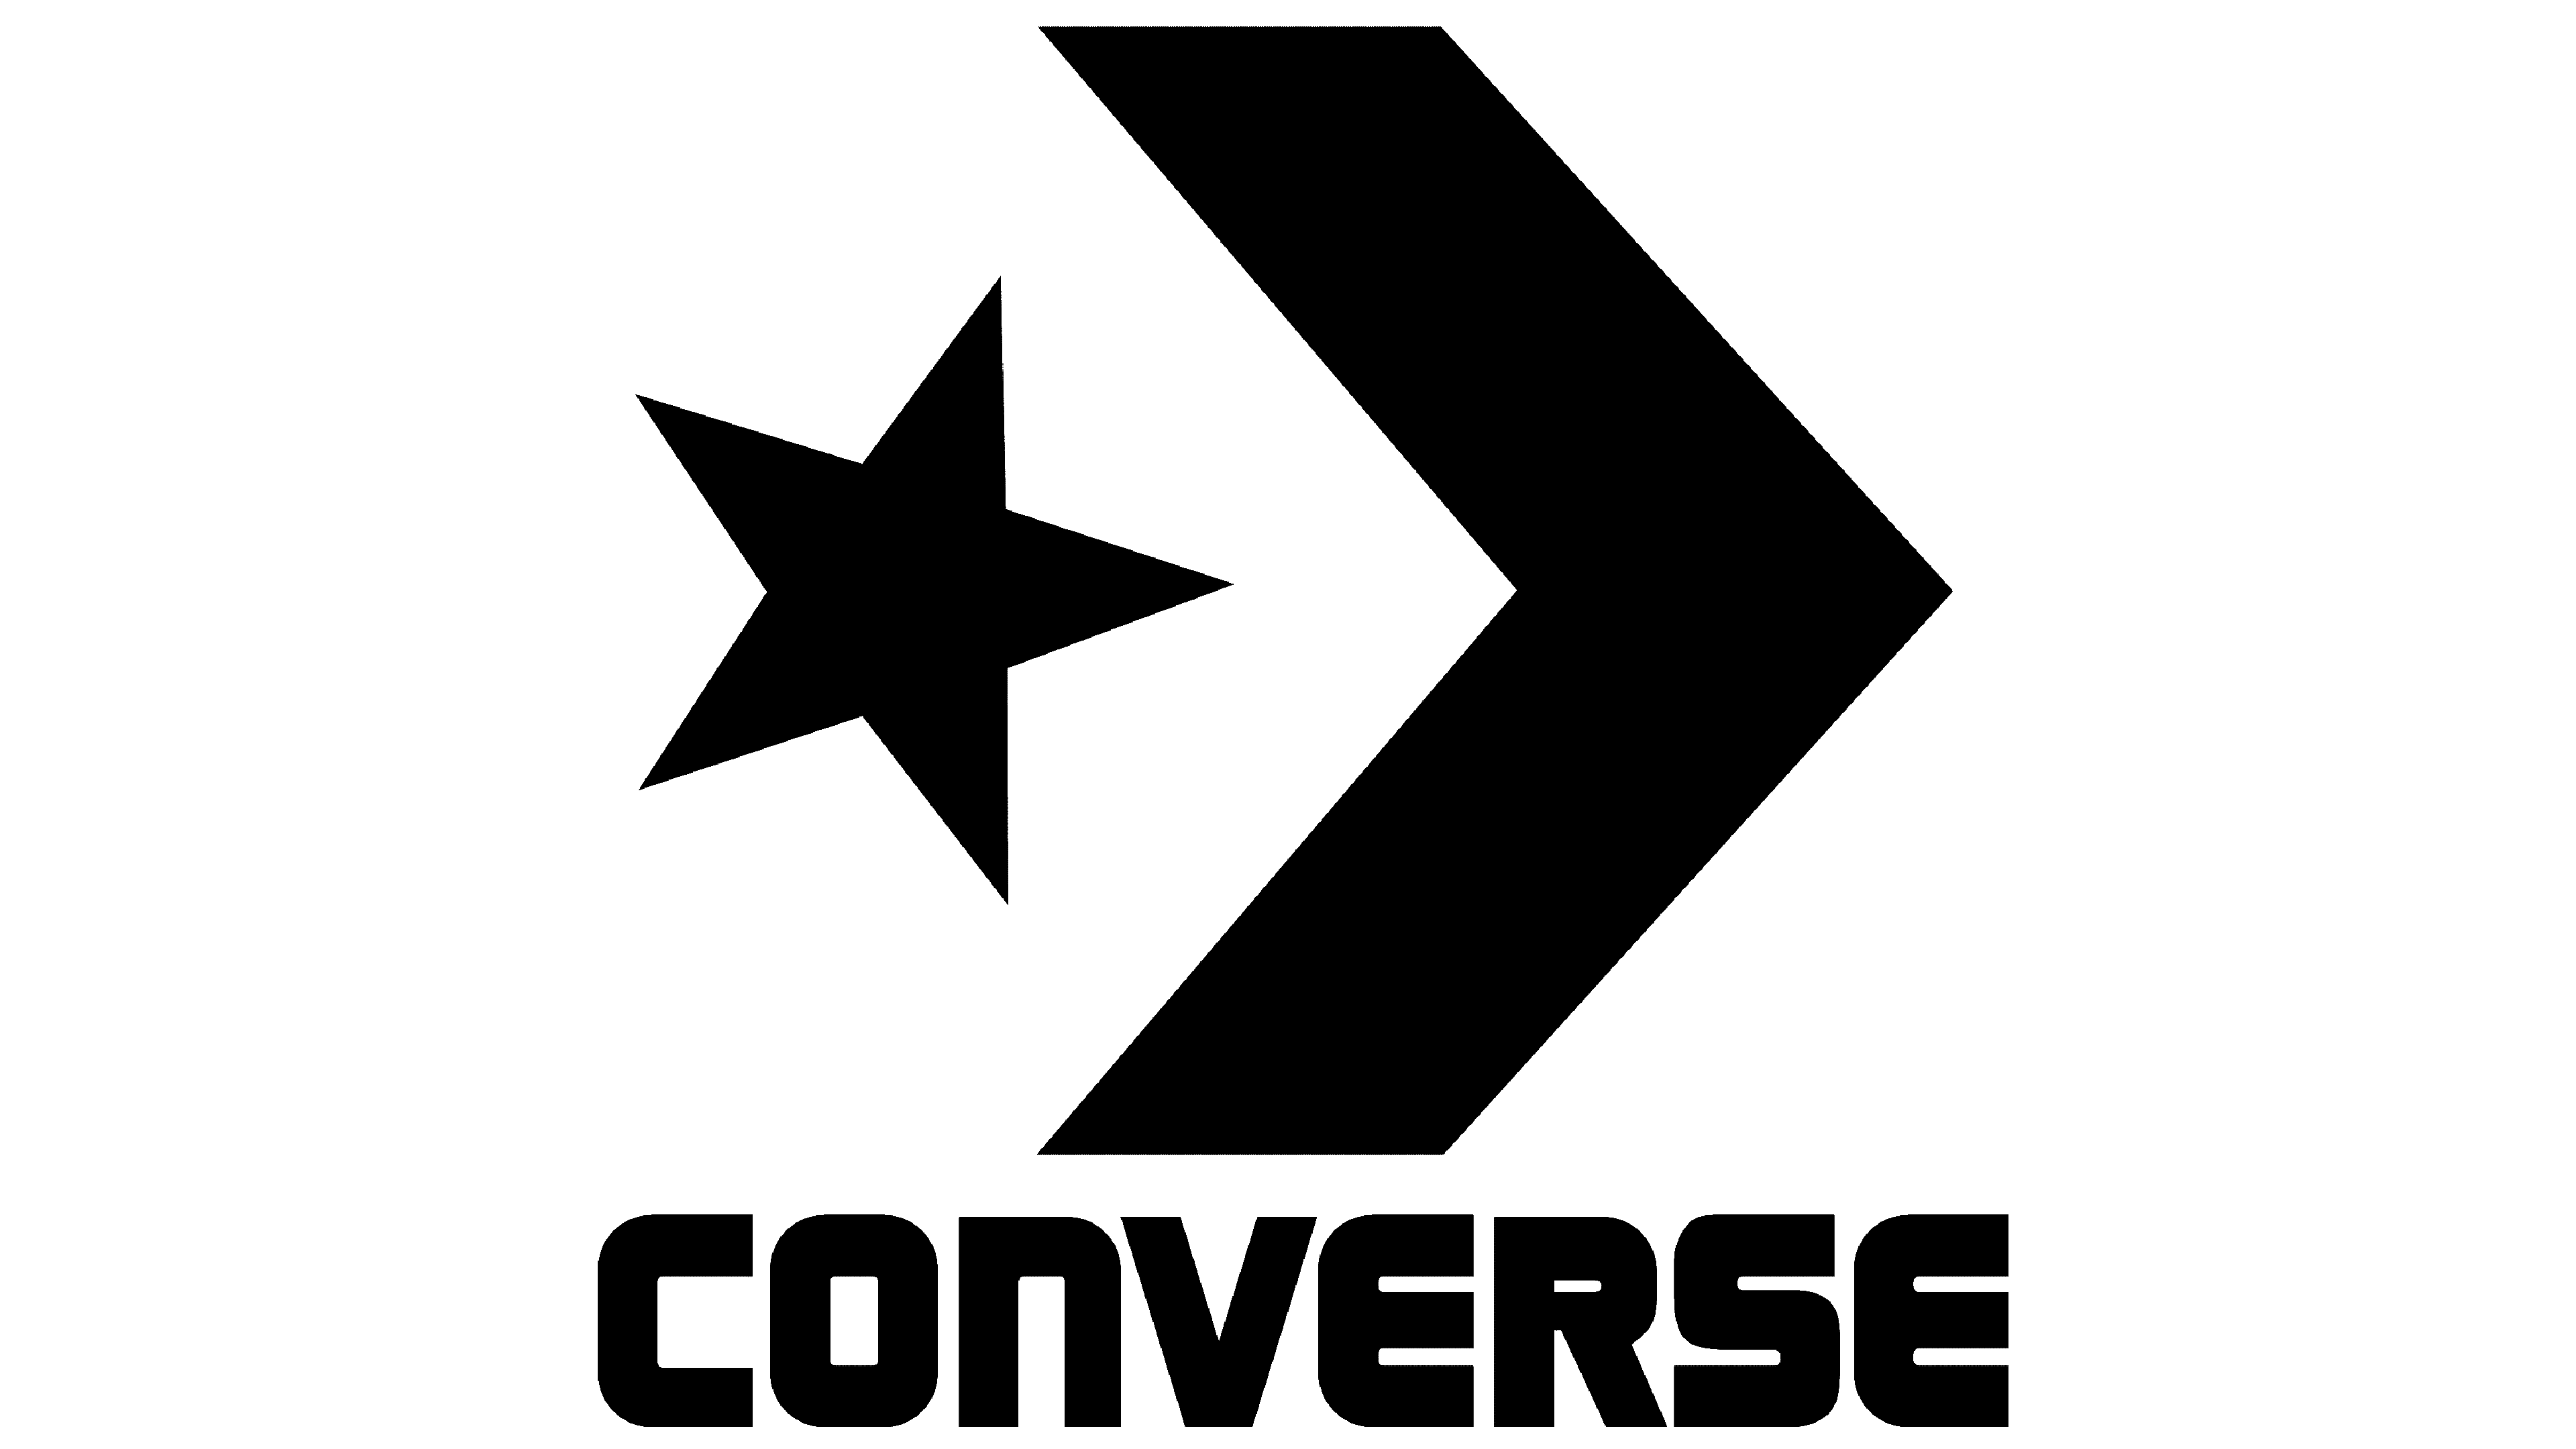 converse noun meaning